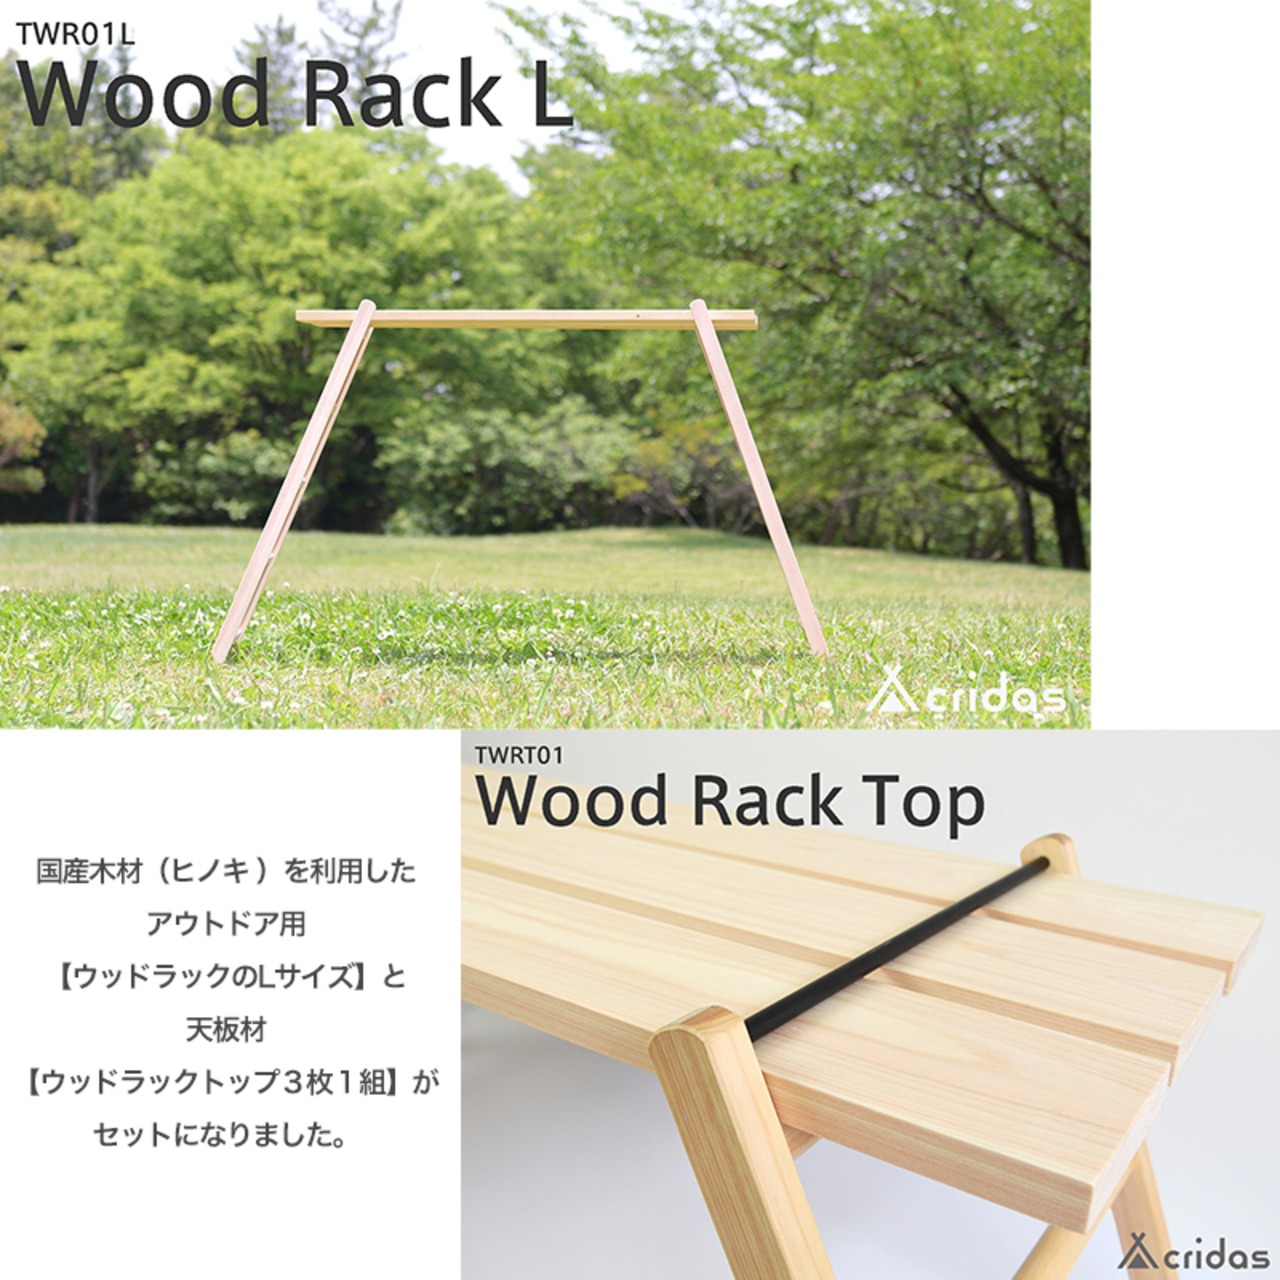 Cridas(クリダス) Wood Rack L ＆ Top Set アウトドア用 ウッドラックL